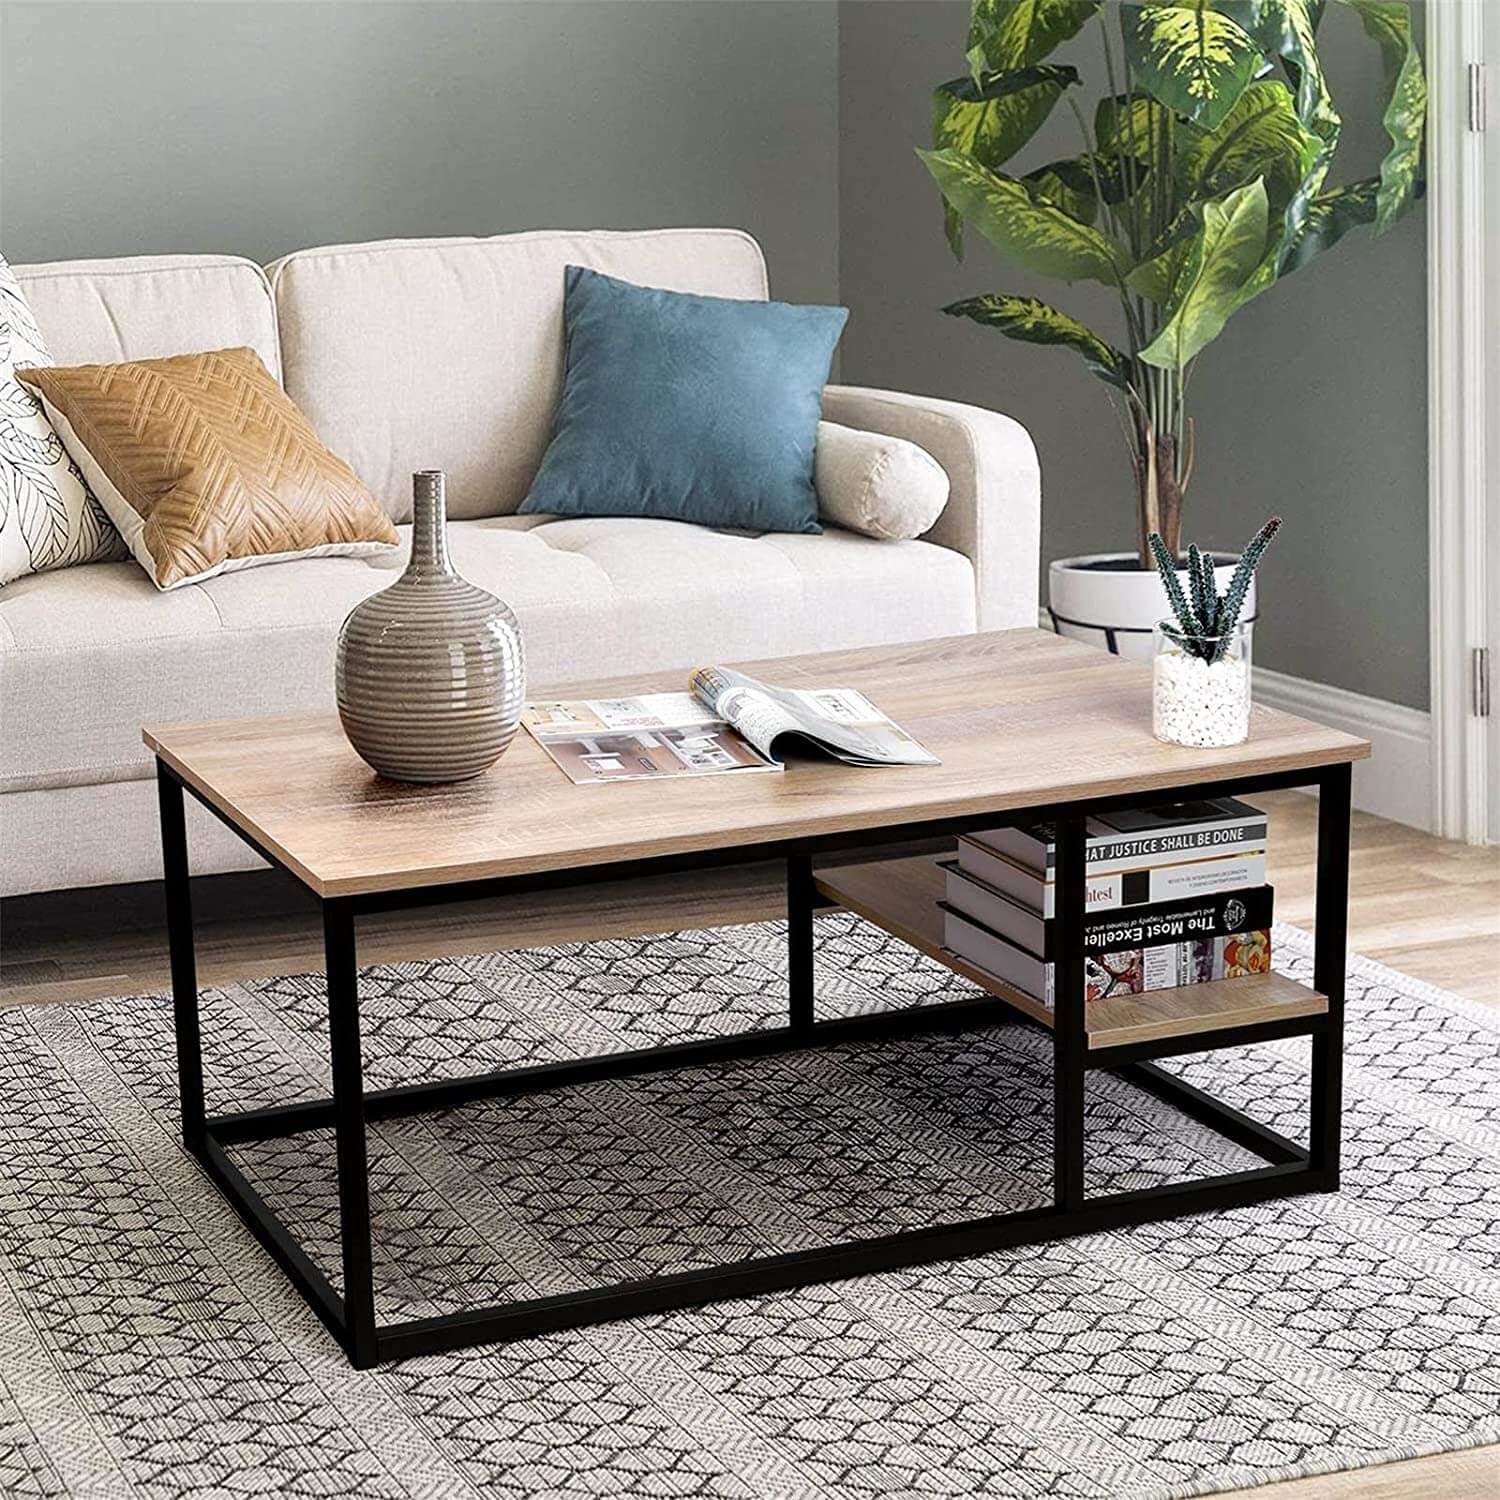 Muebles minimalistas para salón